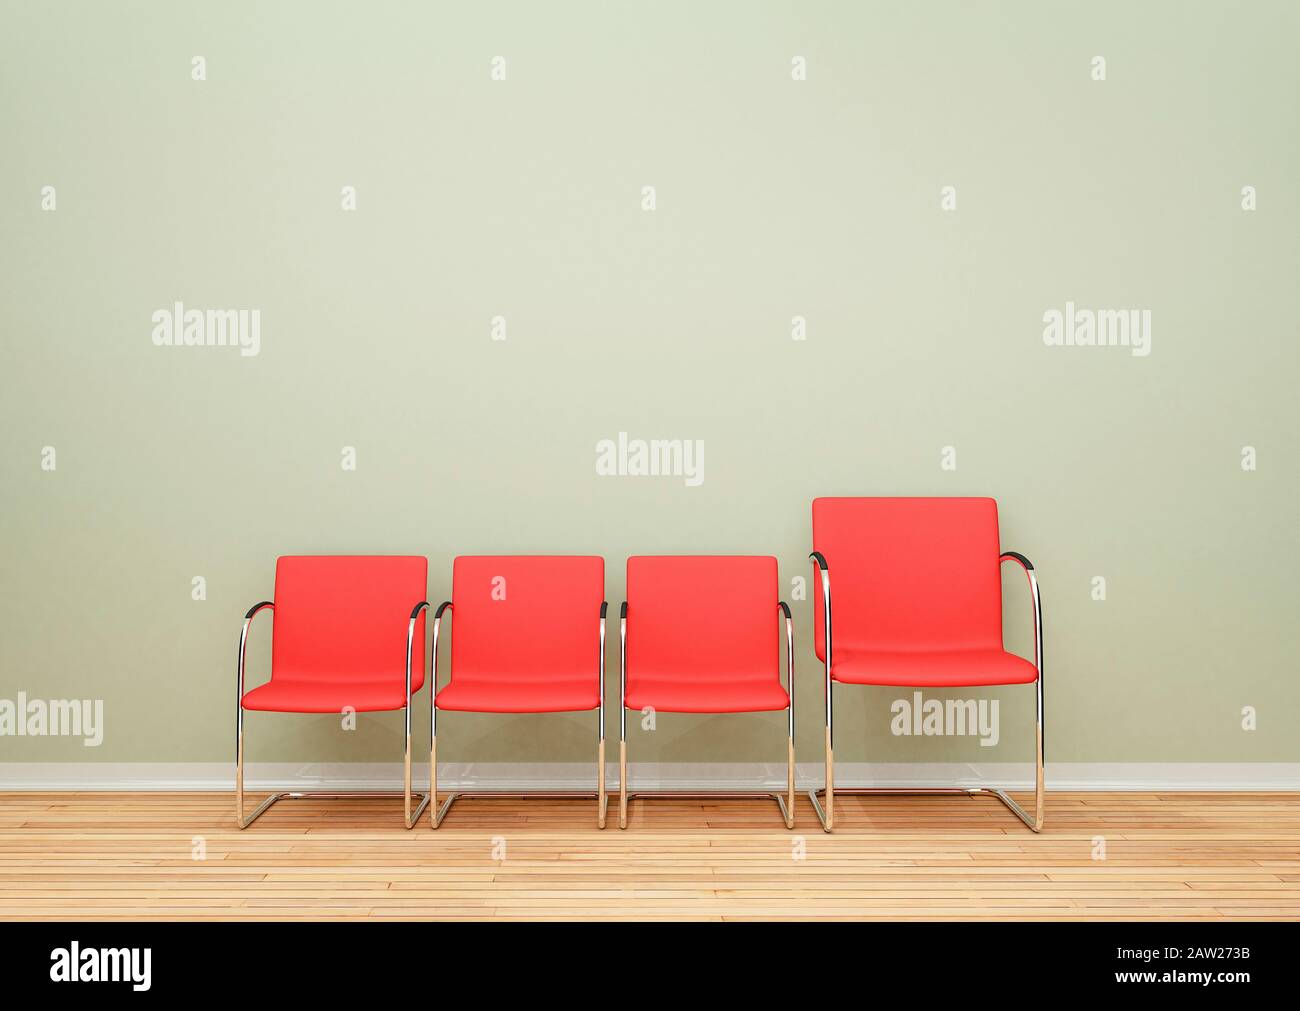 Trois plus petites chaises et une plus grande chaise dans une rangée dans une pièce vide, concept de différence Banque D'Images